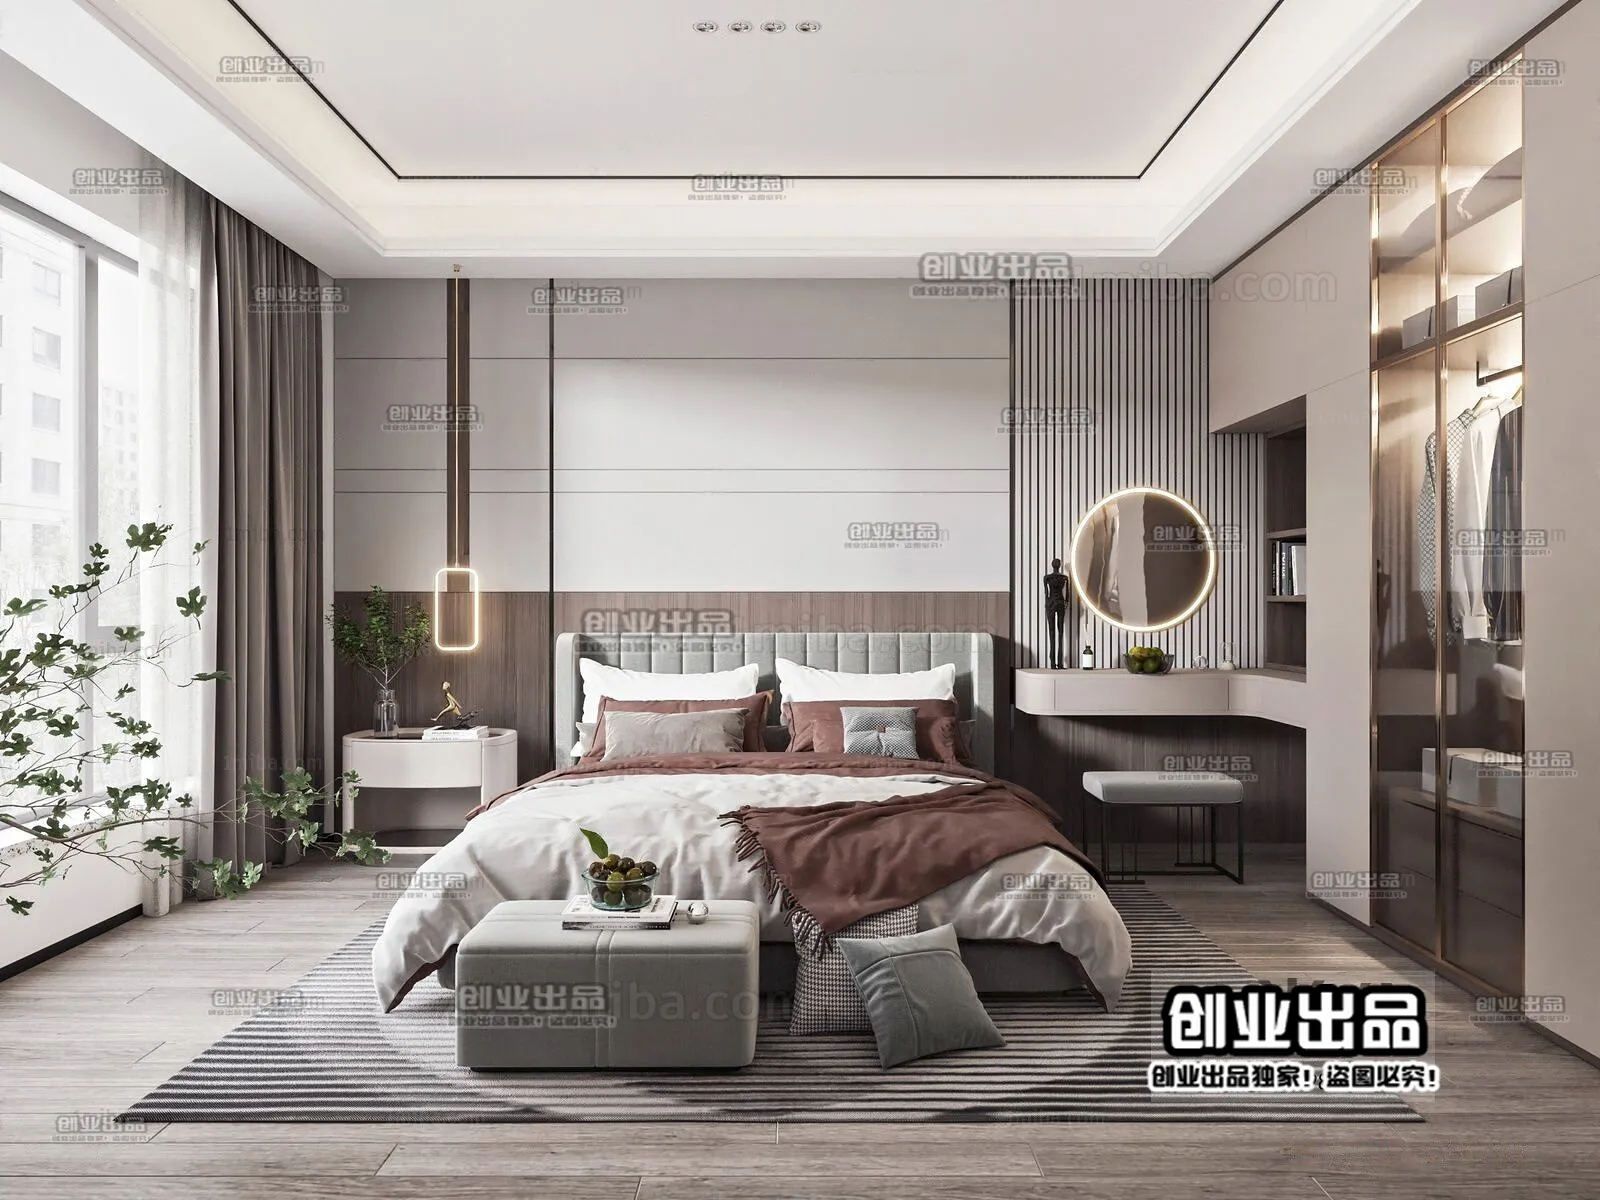 Bedroom – Modern Interior Design – 3D Models – 064